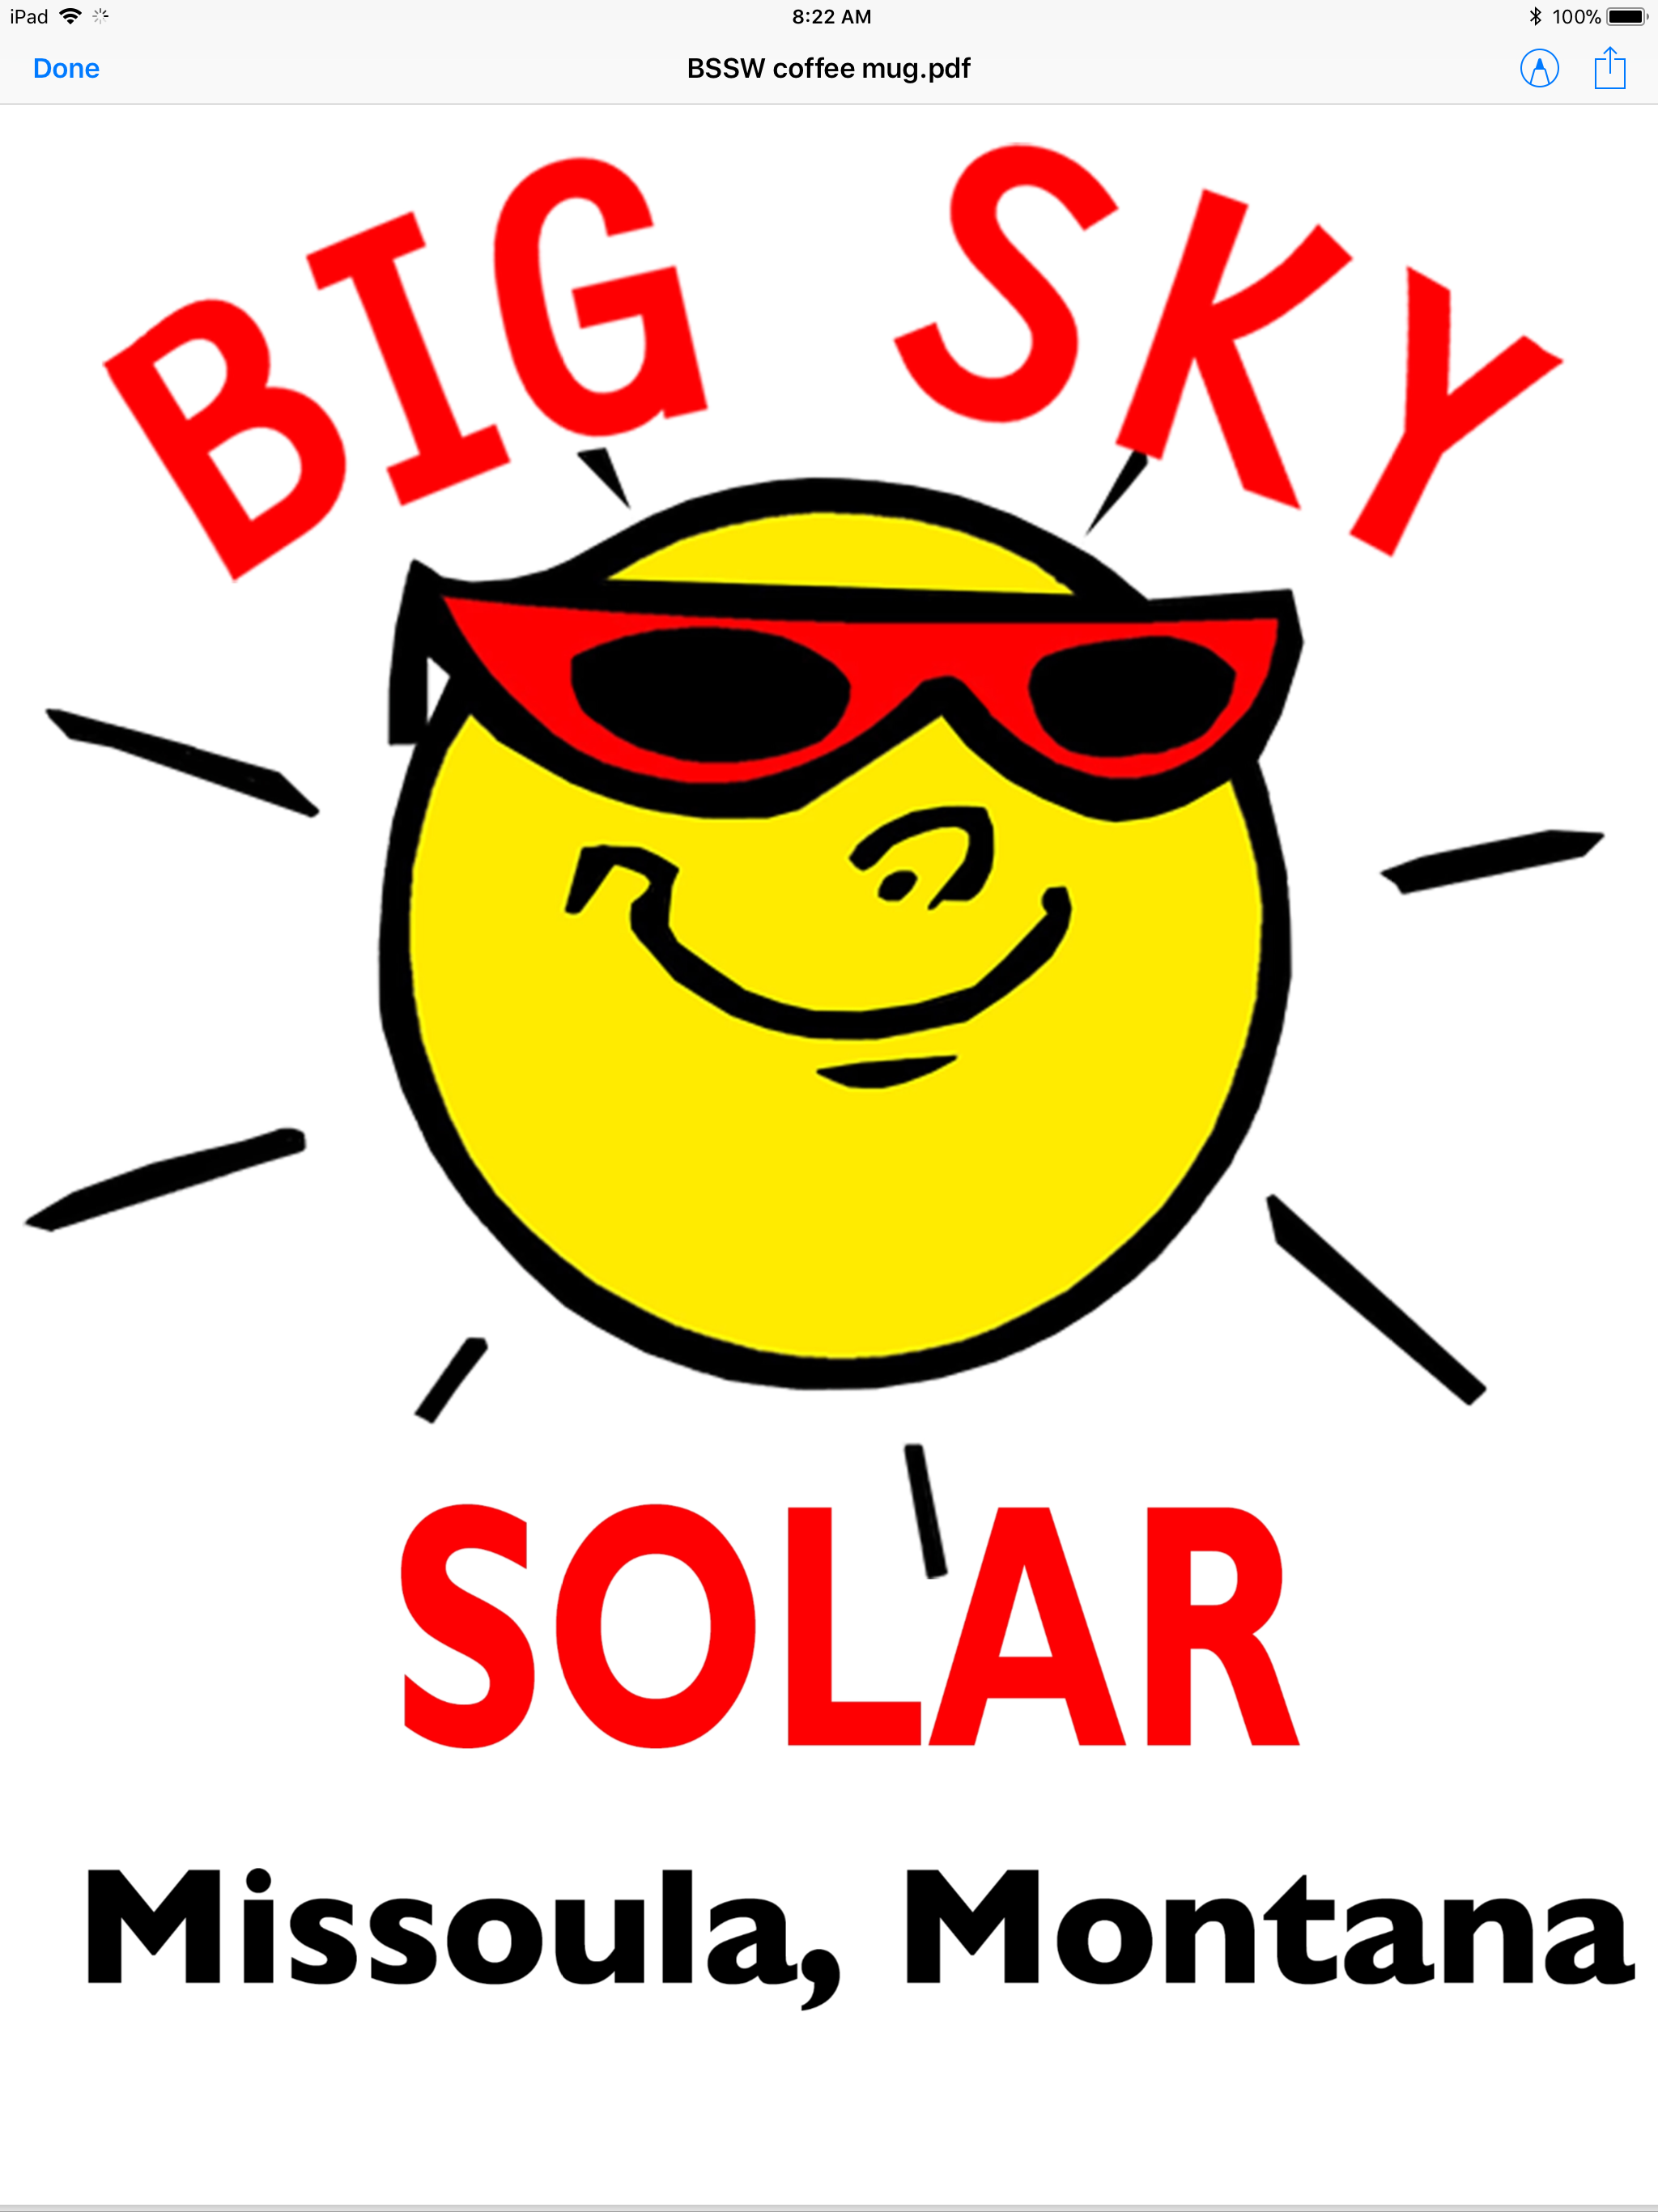 Big Sky Solar MT logo